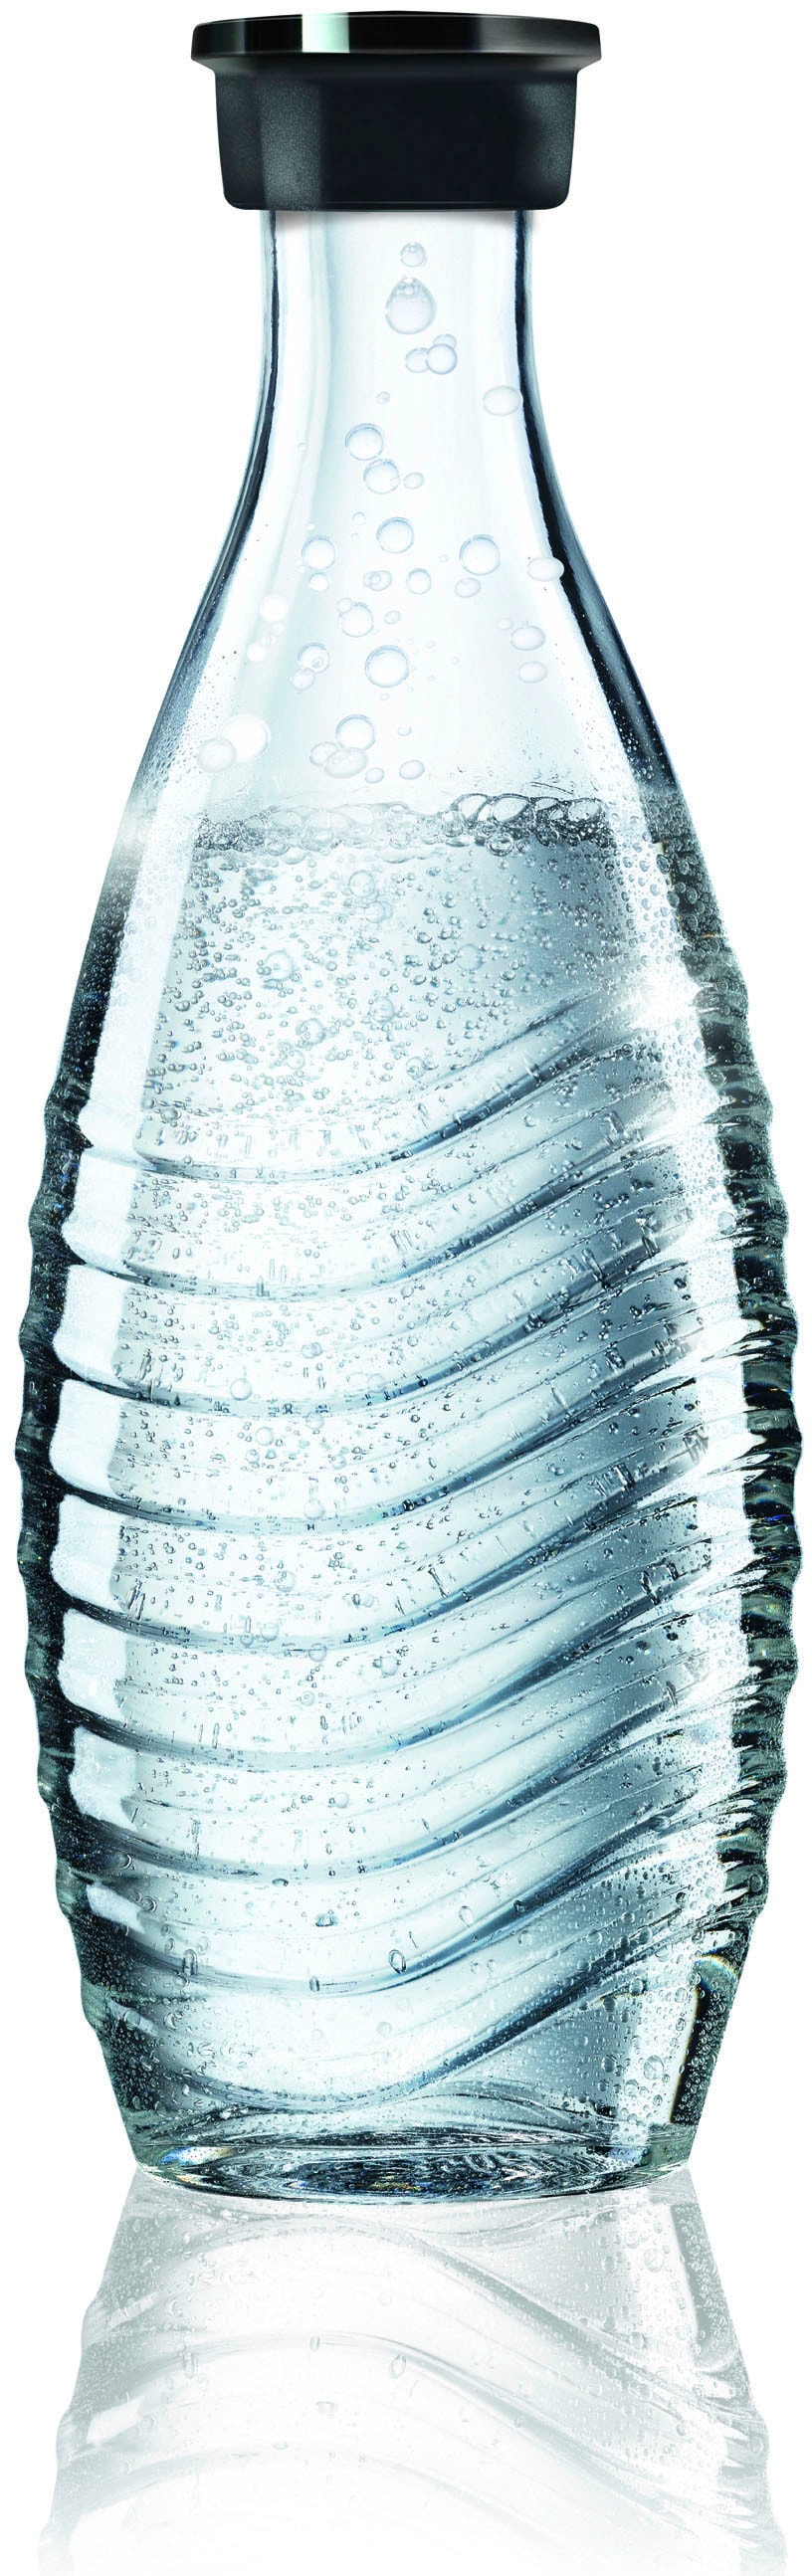 SodaStream Wassersprudler »Crystal 3.0«, (3 tlg.), mit Quick Connect CO2-Zylinder und 1x Glaskaraffe 0,7 L